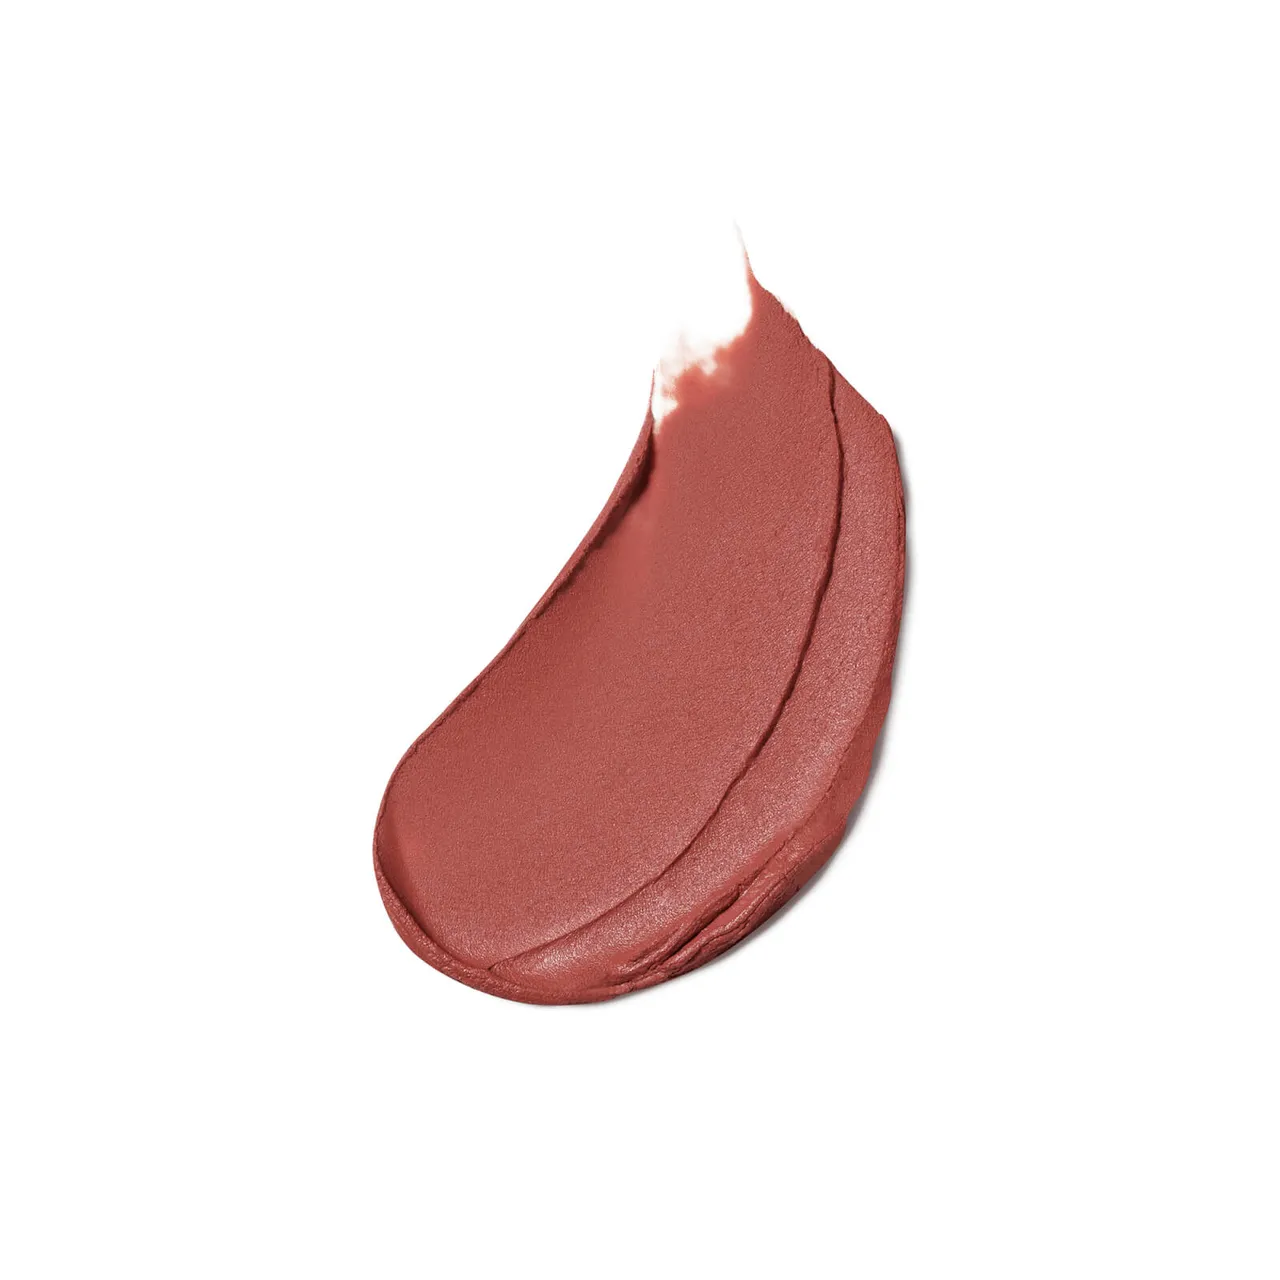 Estée Lauder Pure Colour Matte Lipstick 3.5g (Various Shades) - Lure You in